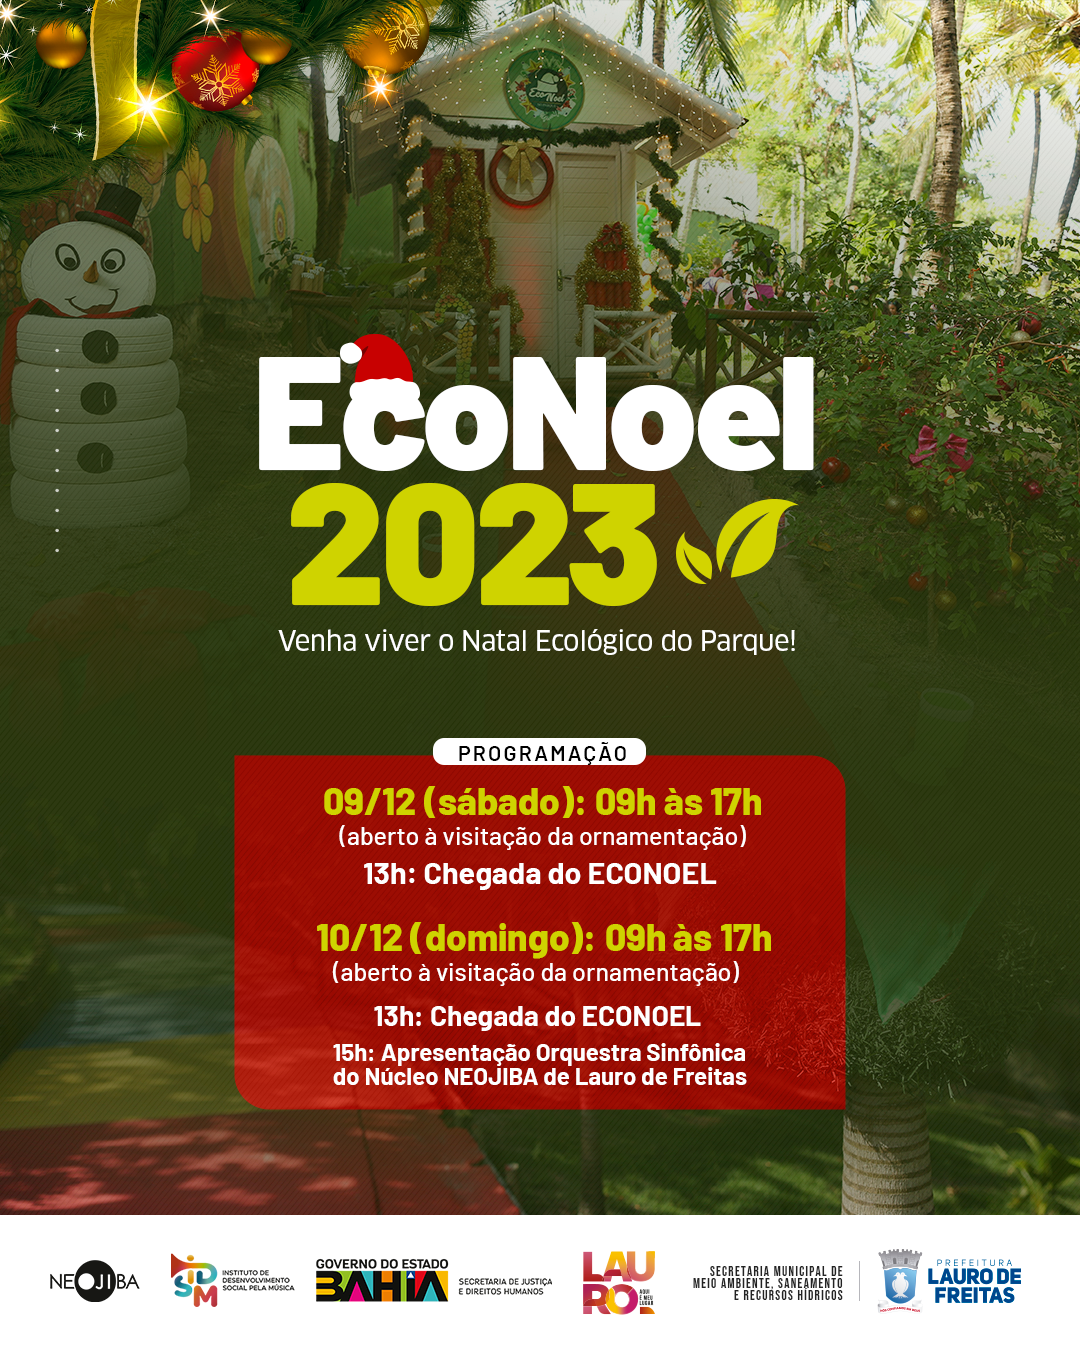  Prefeitura promove 2ª edição do “Projeto ECONOEL 2023”, no Parque Ecológico, de sexta (8) à domingo (10)